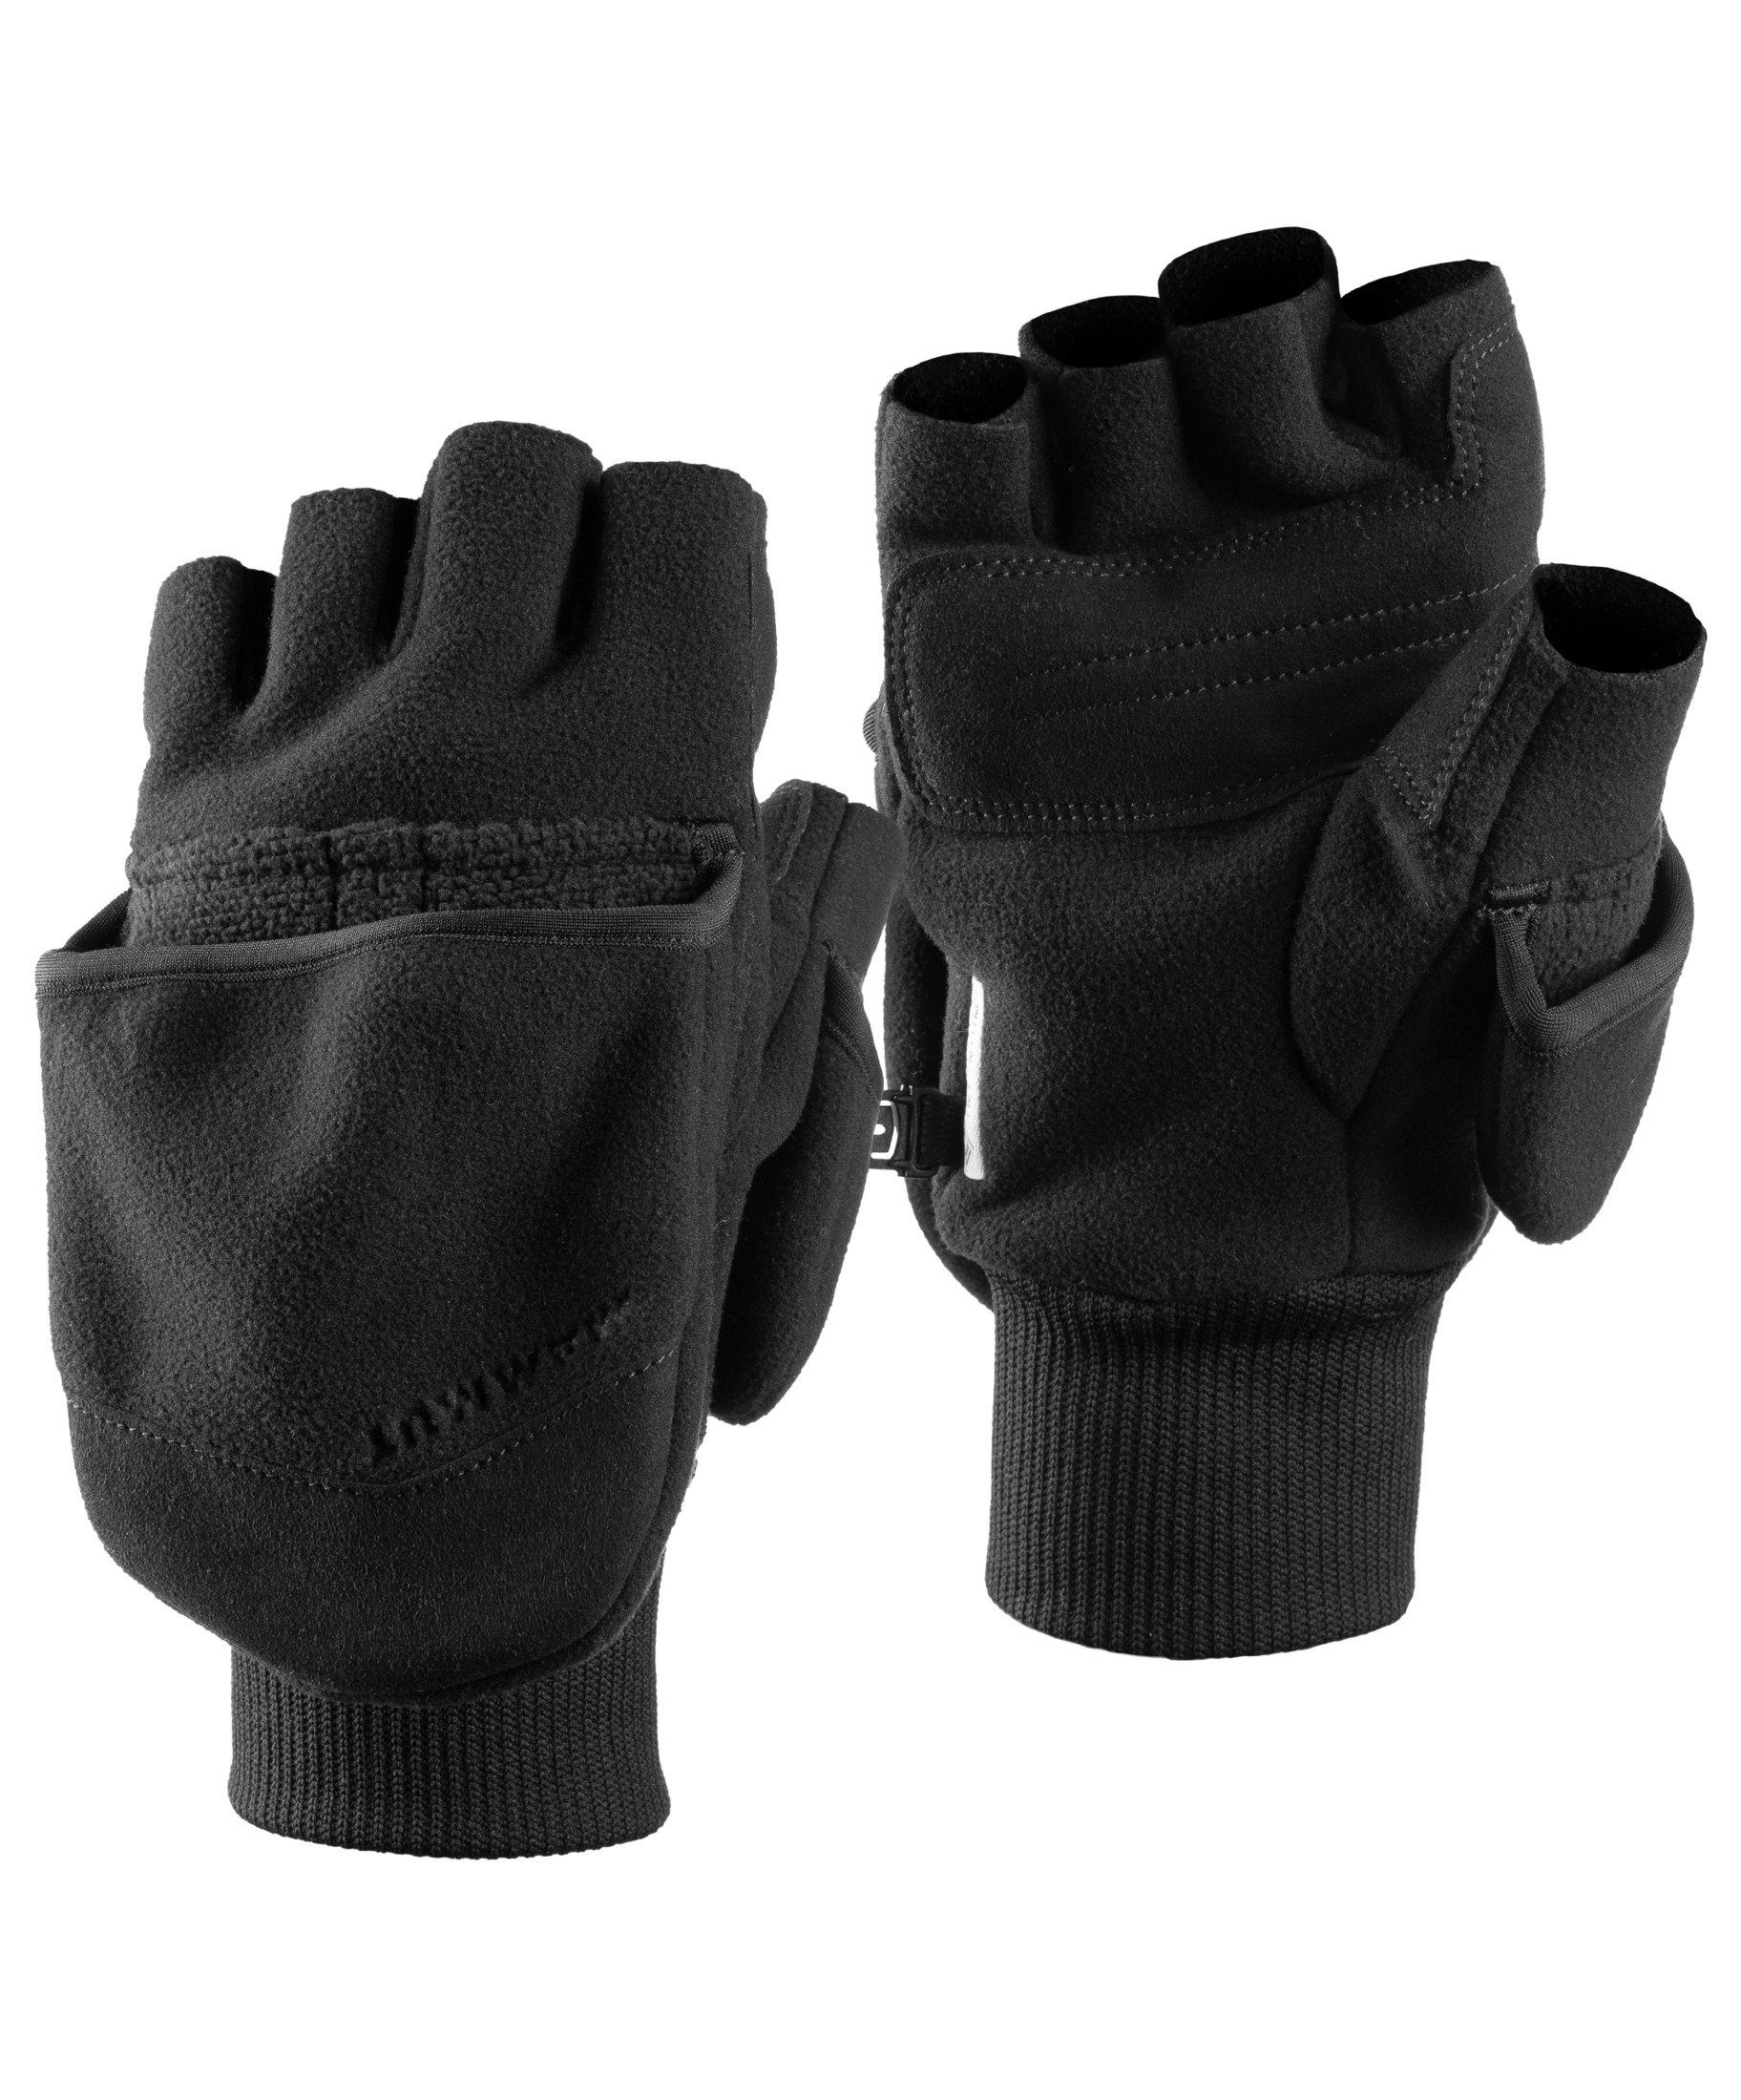 Shelter Glove Shelter Mammut Multisporthandschuhe Glove